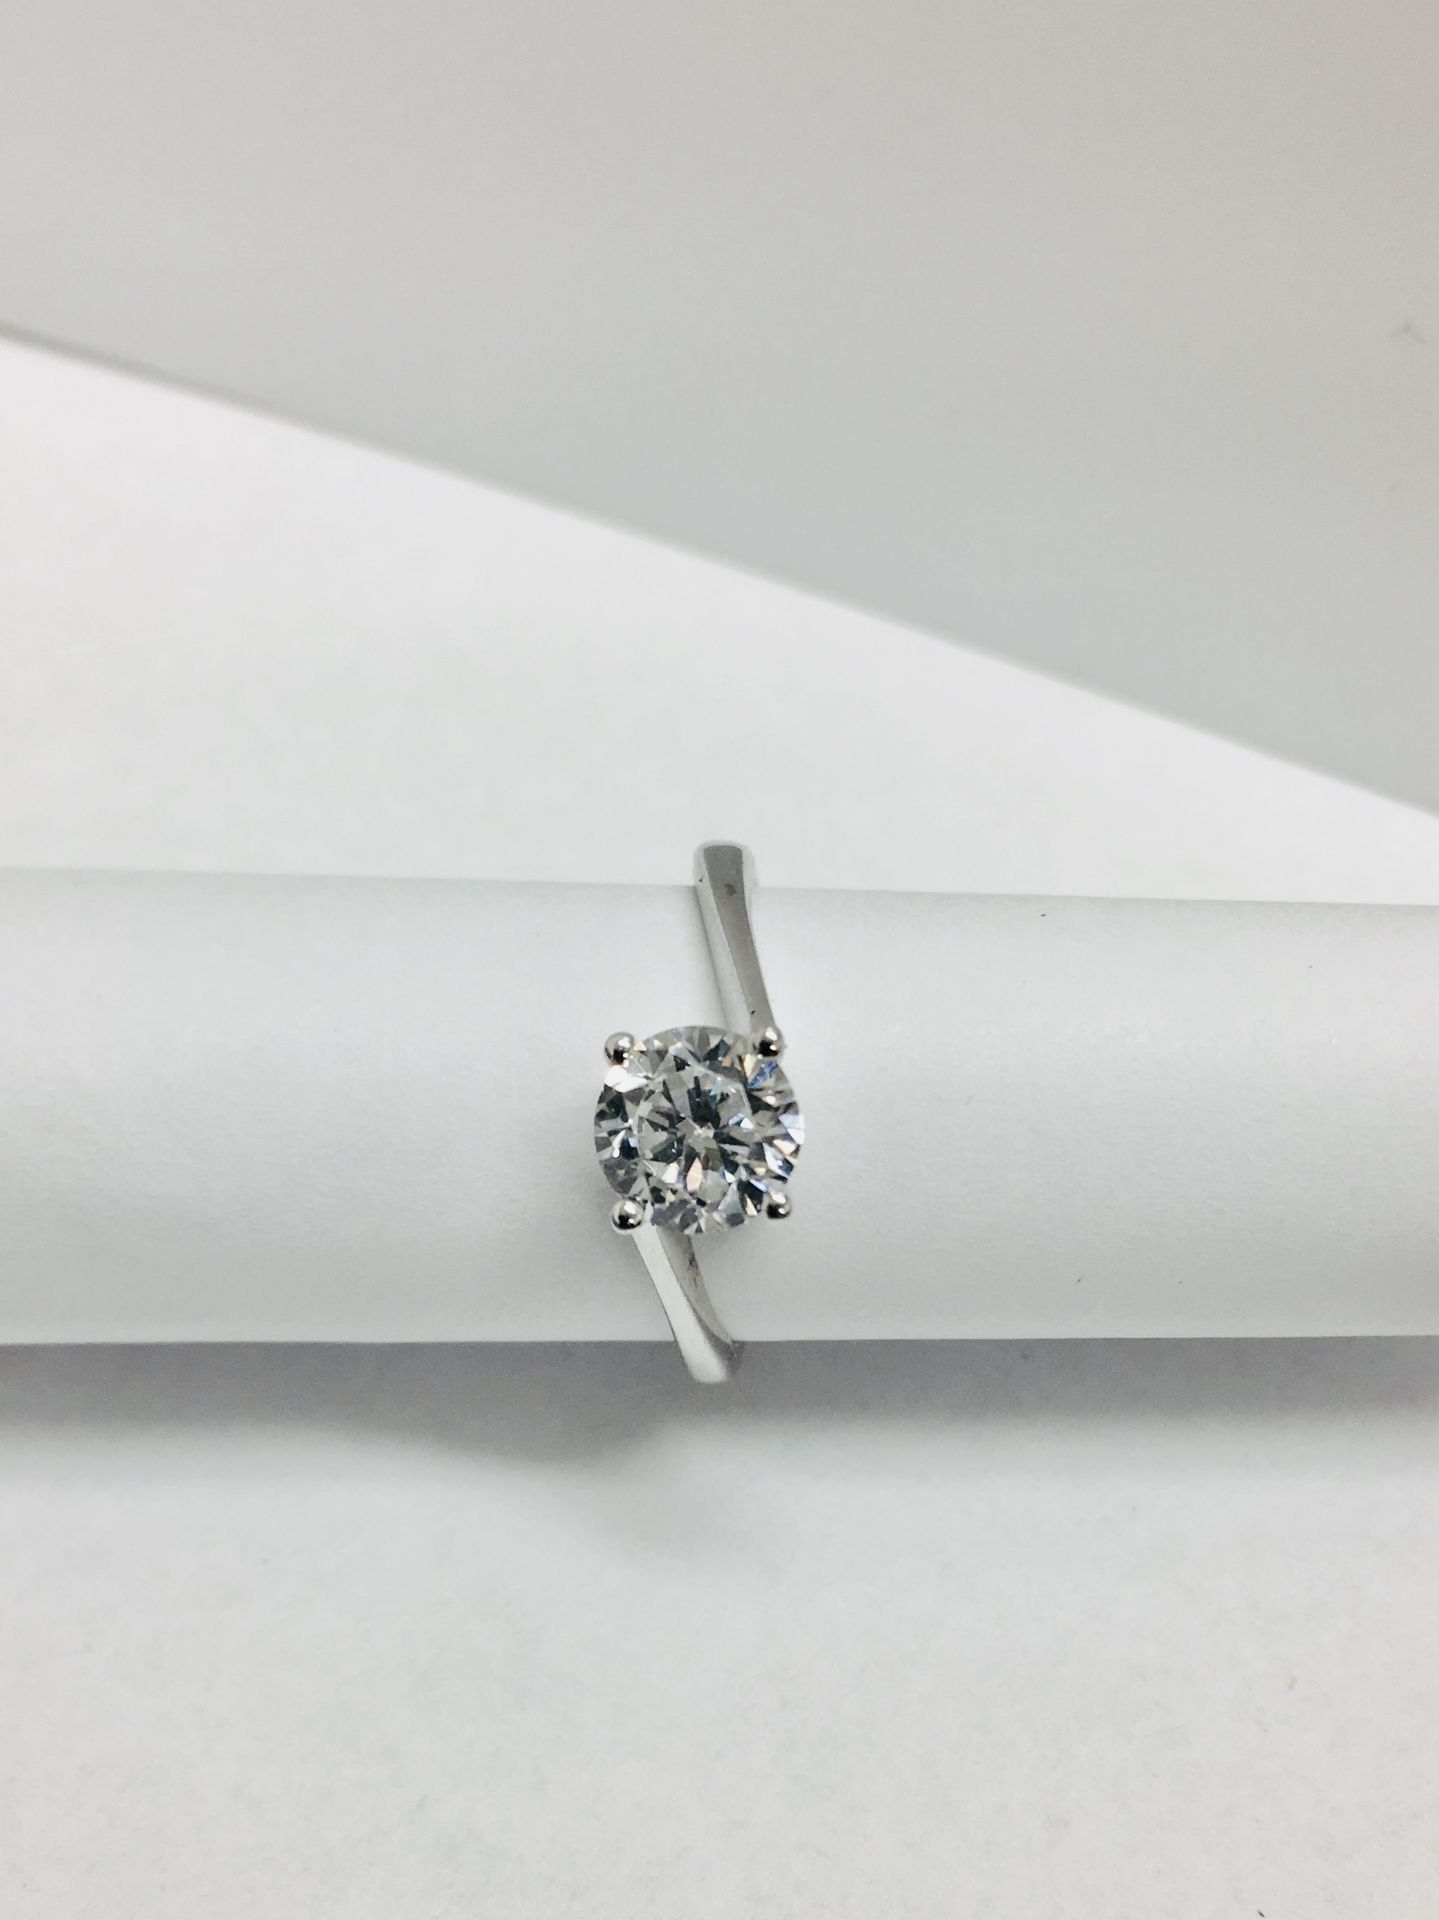 platinum twist solitaire ring,0.50ct brilliant cut diamond vs clarity H colour(clarity enhanced), - Bild 4 aus 4